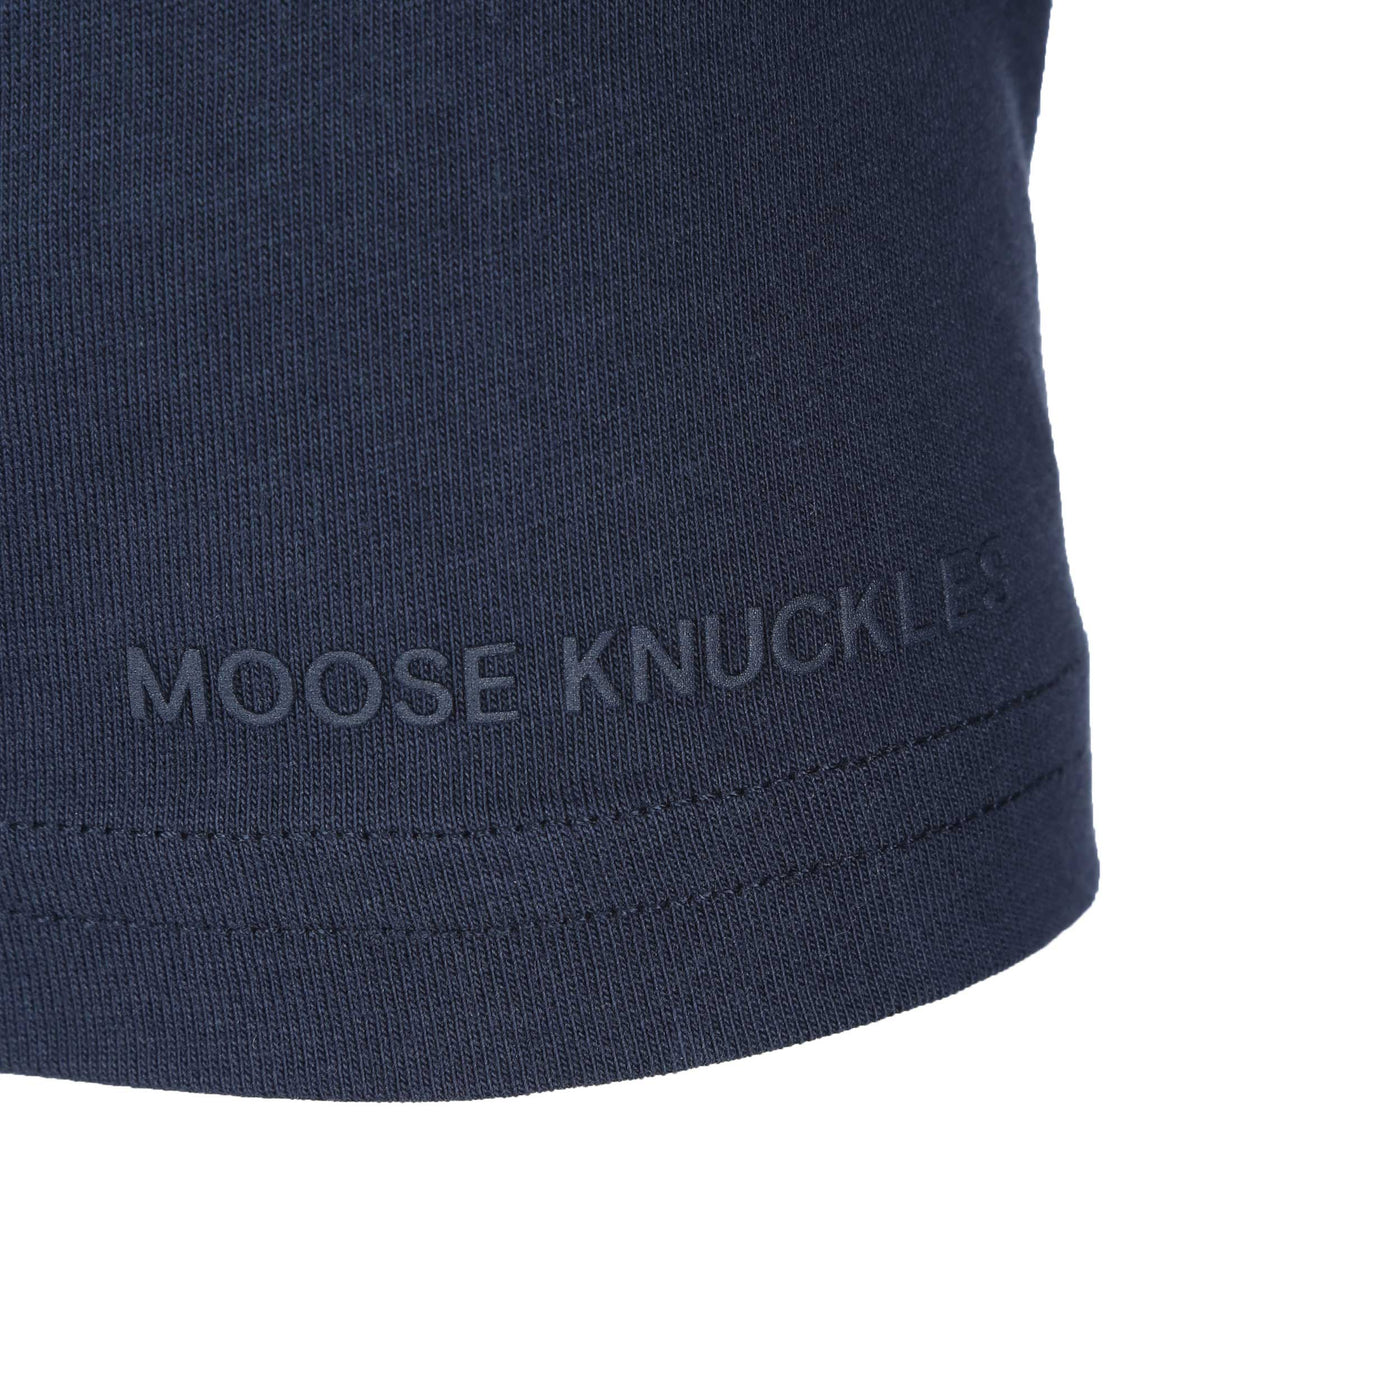 Moose Knuckles Gerrard T Shirt in Navy Detail